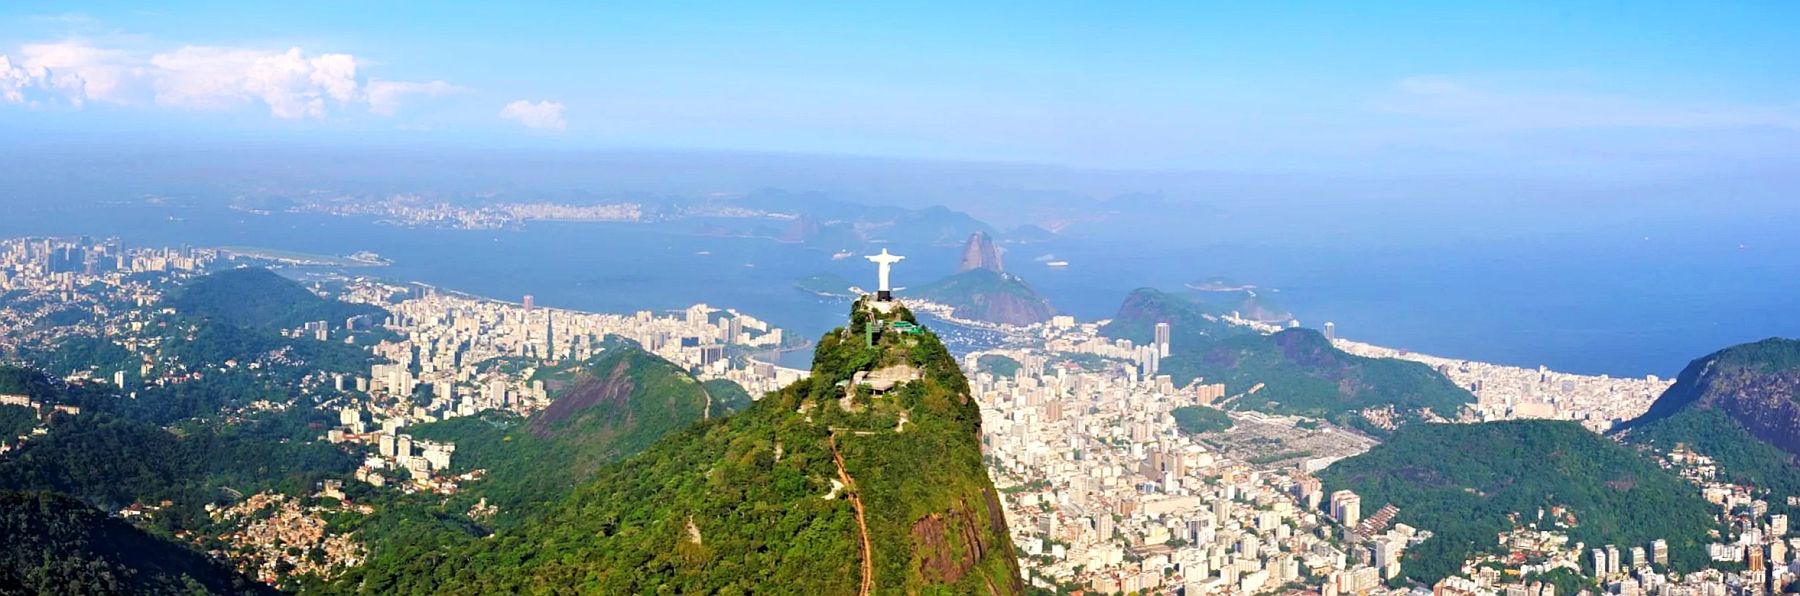 Бразилия начинается с Рио